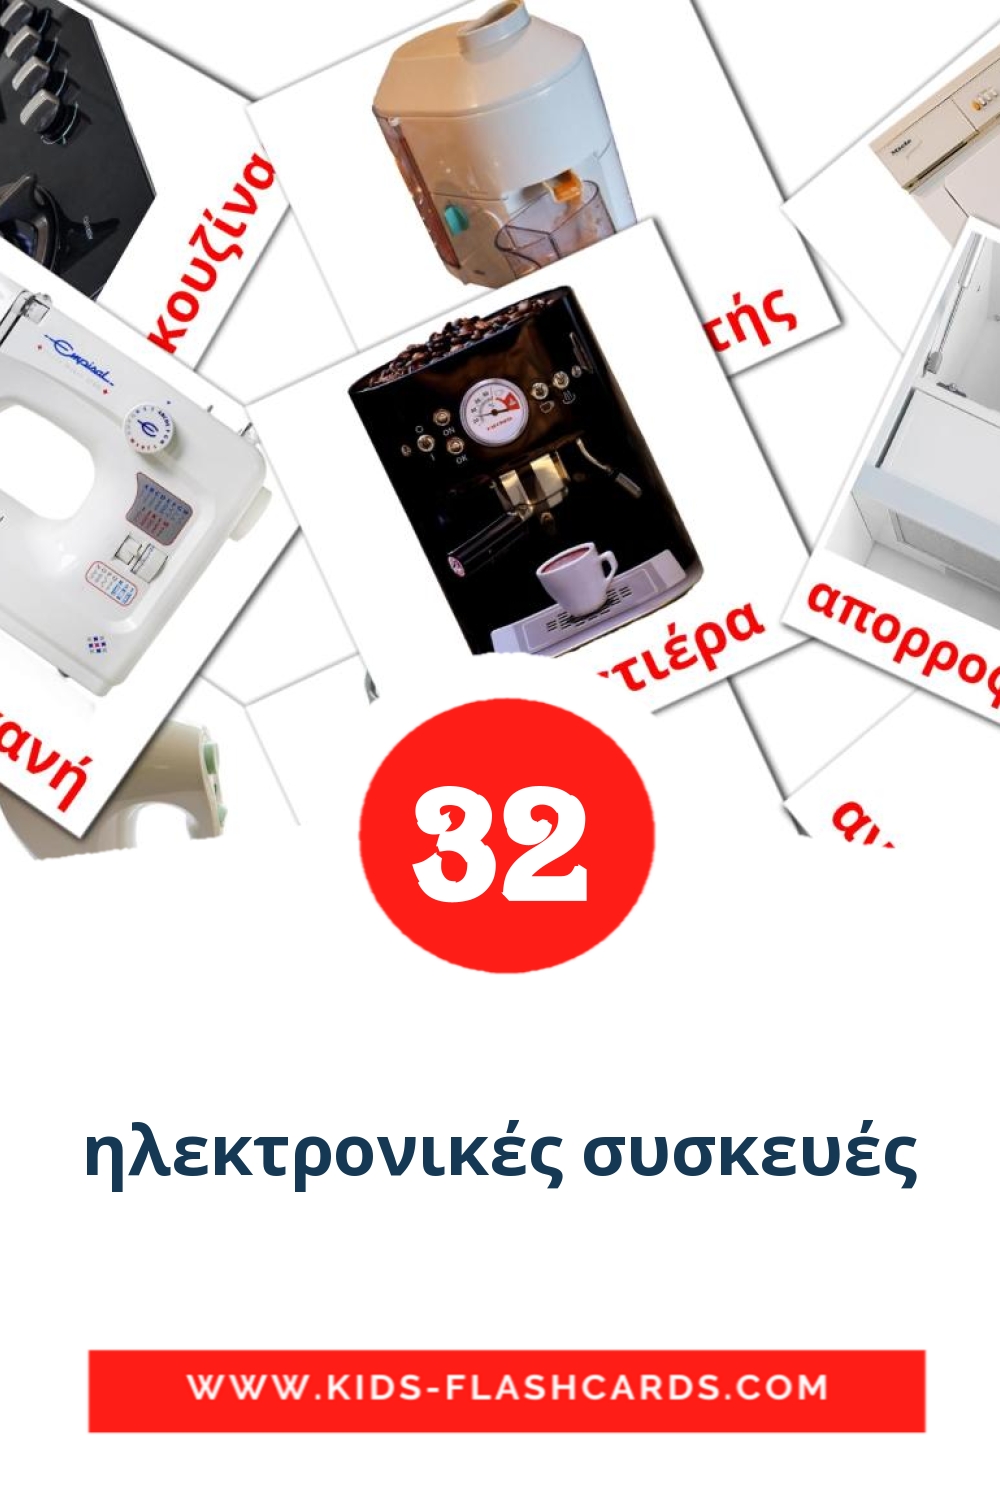 32 cartes illustrées de ηλεκτρονικές συσκευές pour la maternelle en grec